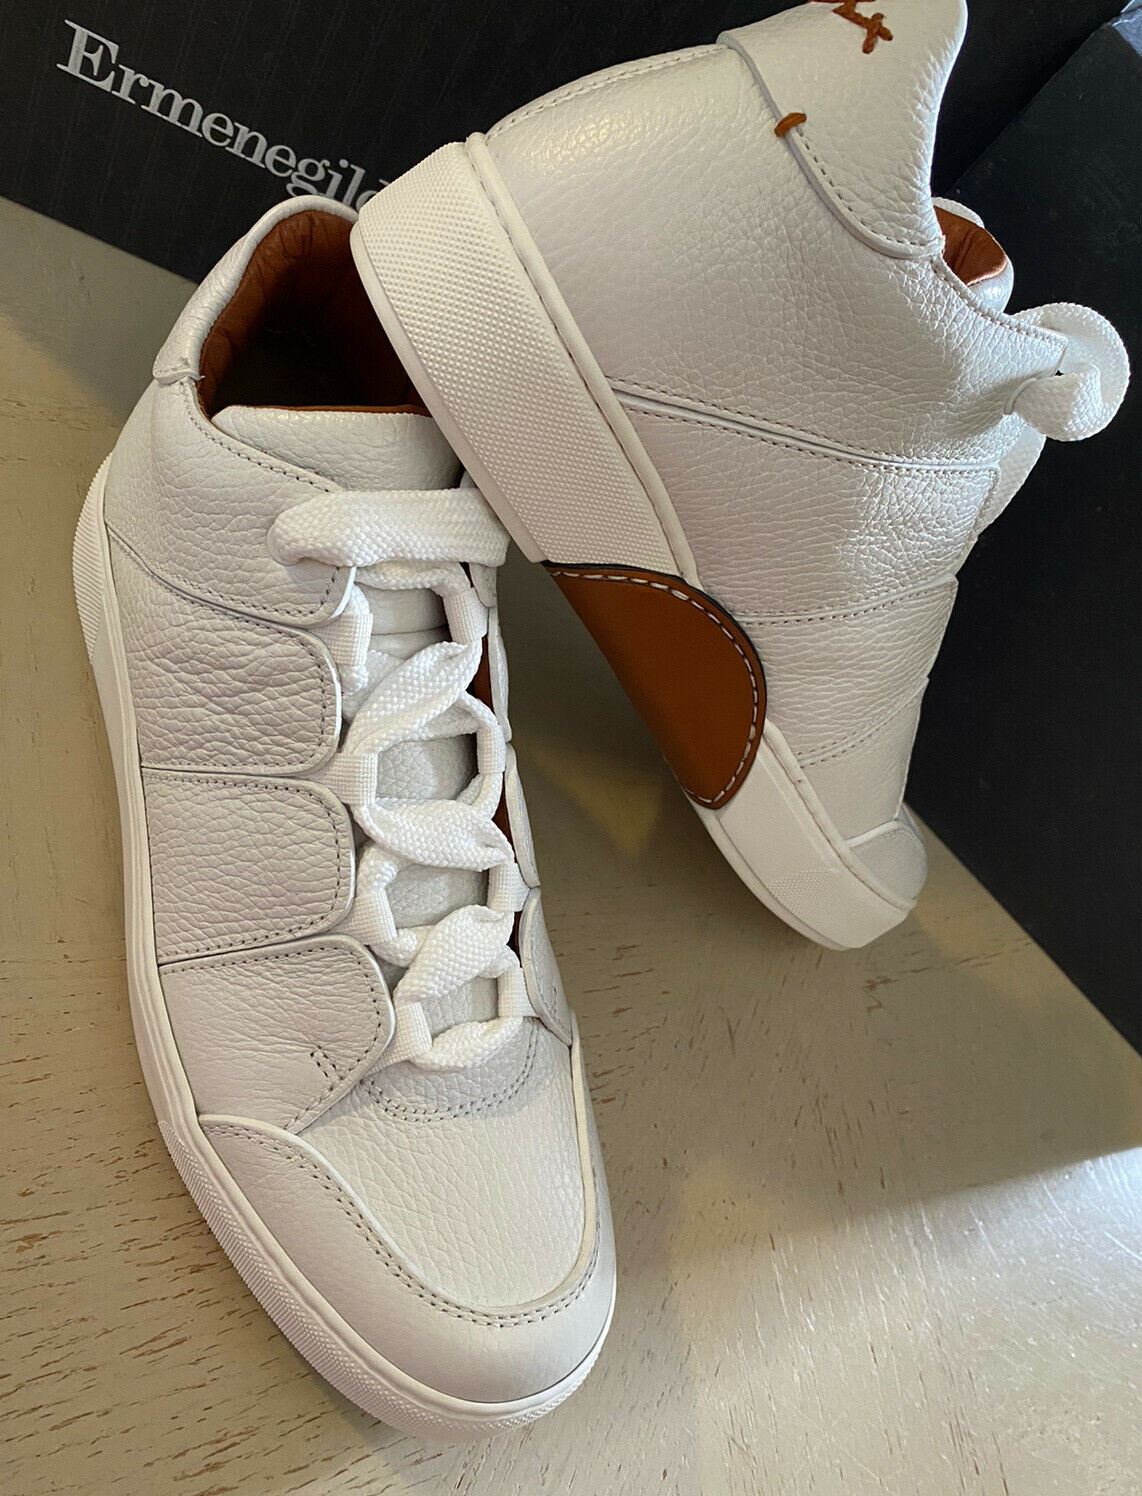 Neue 895 $ Ermenegildo Zegna Couture Leder-Sneakers Schuhe Weiß 10 US Italien